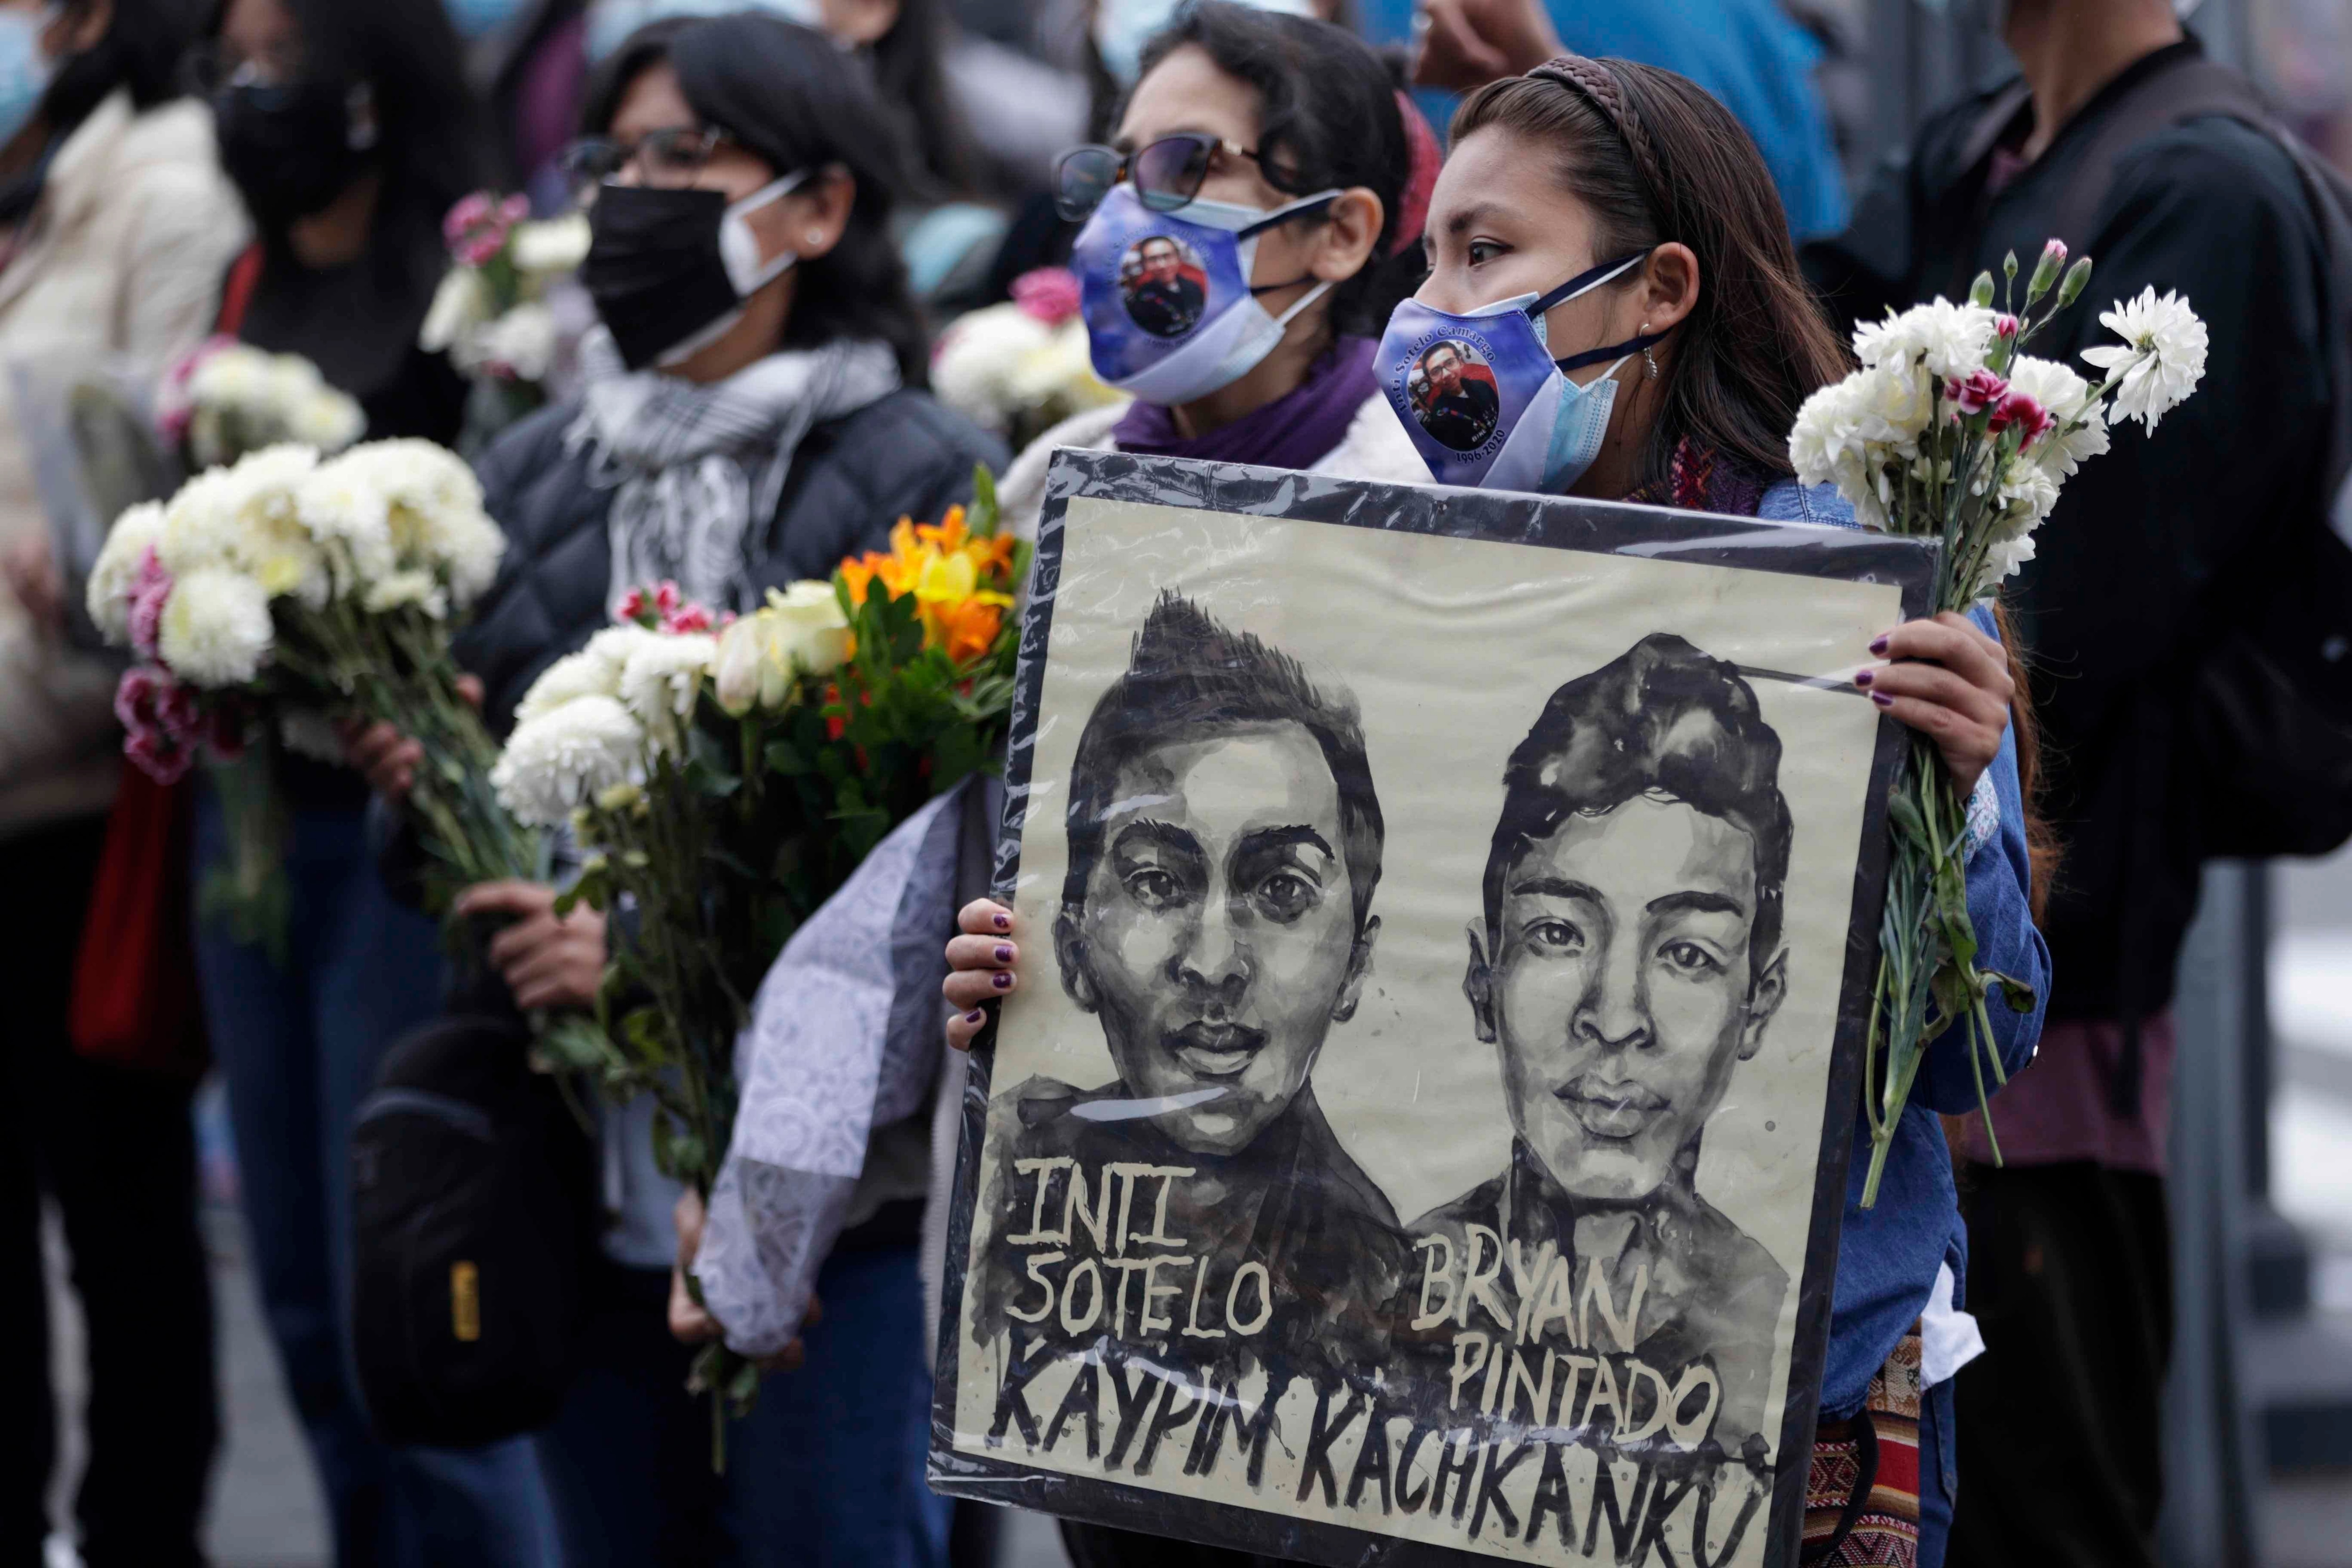 Organizaciones sociales y familiares se movilizaron este martes 14 en Lima recordando a los jóvenes Inti Sotelo y Bryan Pintado, fallecidos hace diez meses en las protestas ante la crisis política del año pasado en Perú. EFE/ Paolo Aguilar 